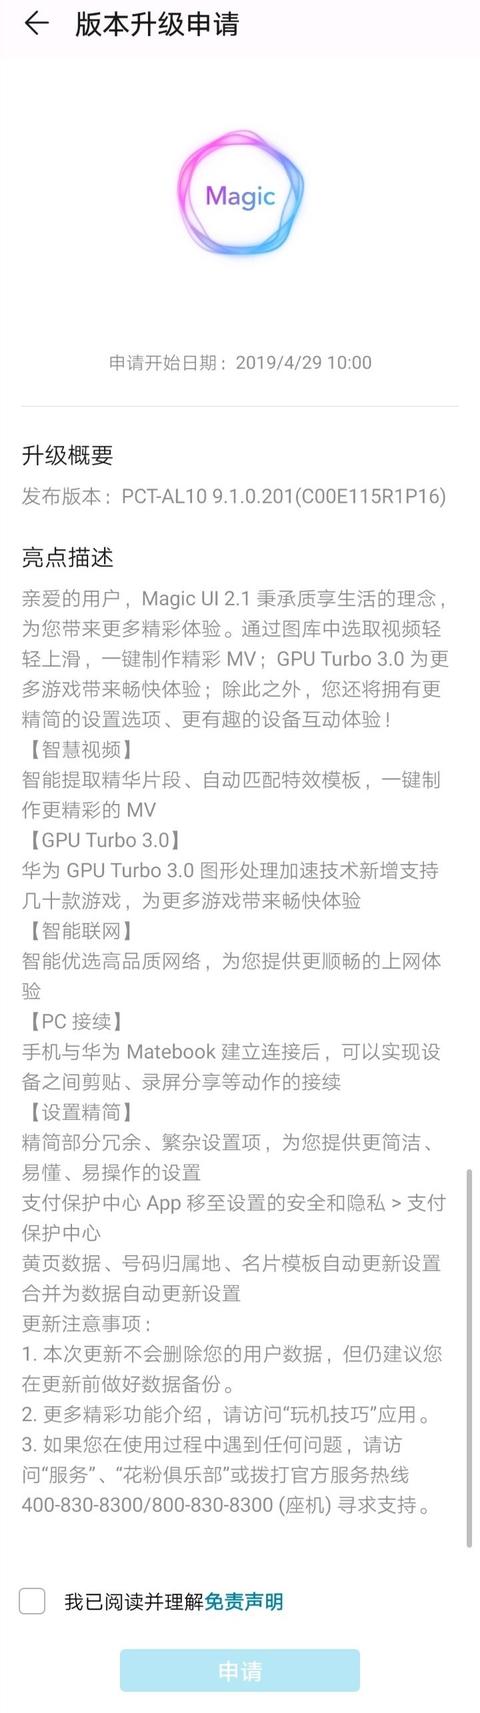 更新GT3.0/AR测量 华为荣耀V20 Magic UI 2.1开放升级申请